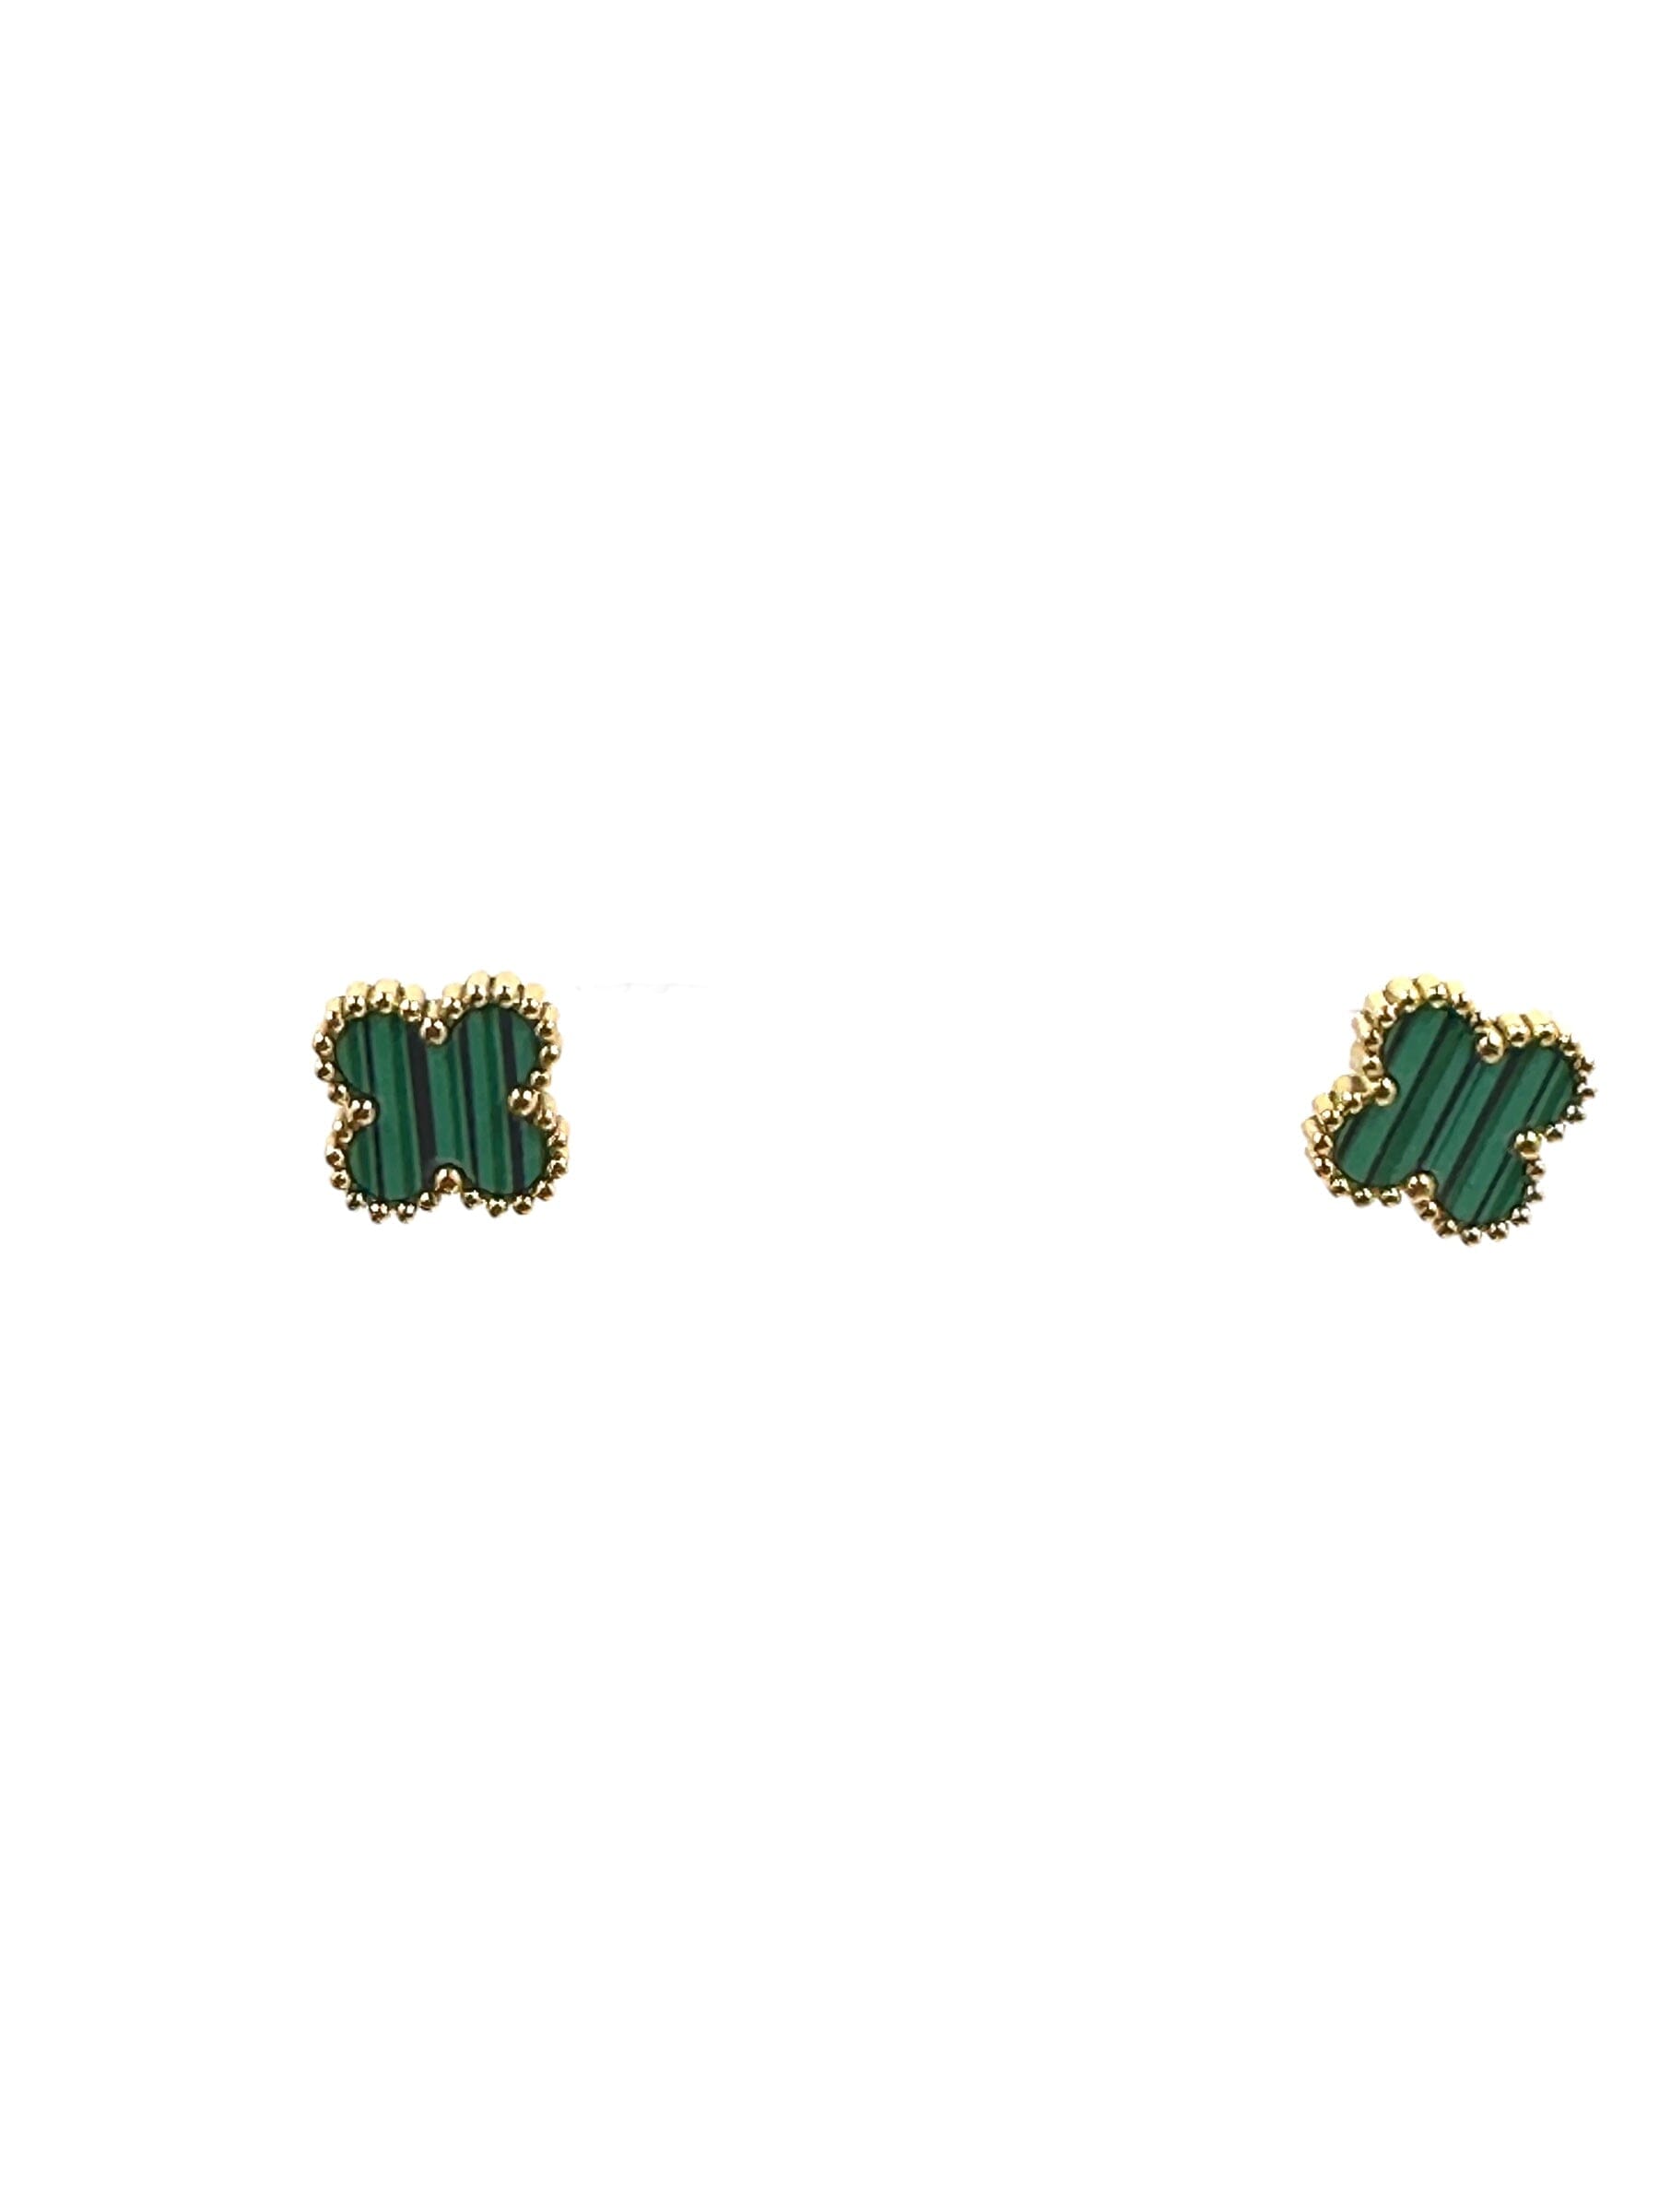 Kaitlin Flower Clover Earrings Earrings Trendzio Jewelry Green 